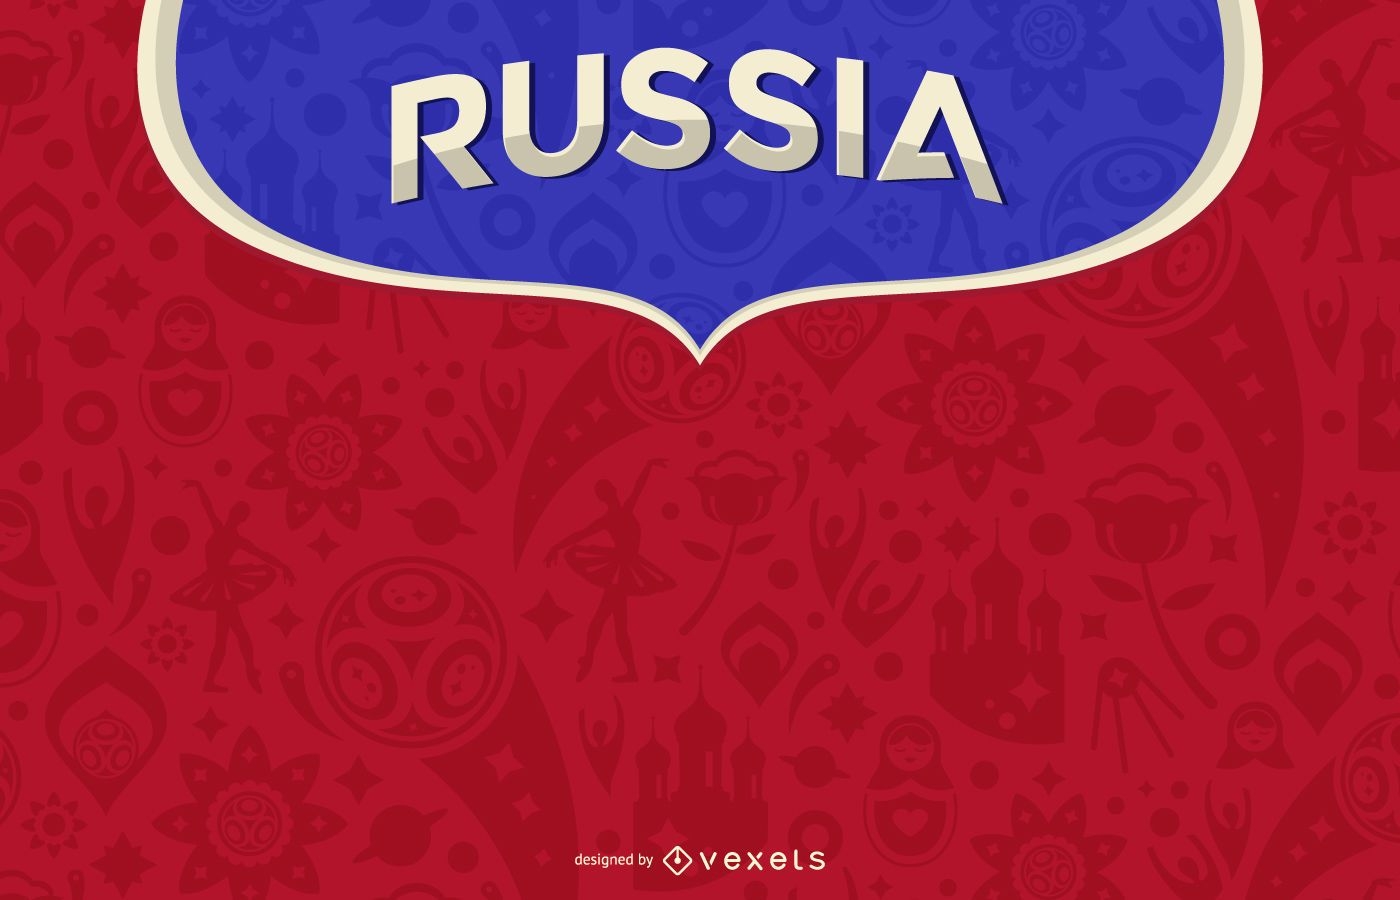 Russland 2018 Hintergrunddesign